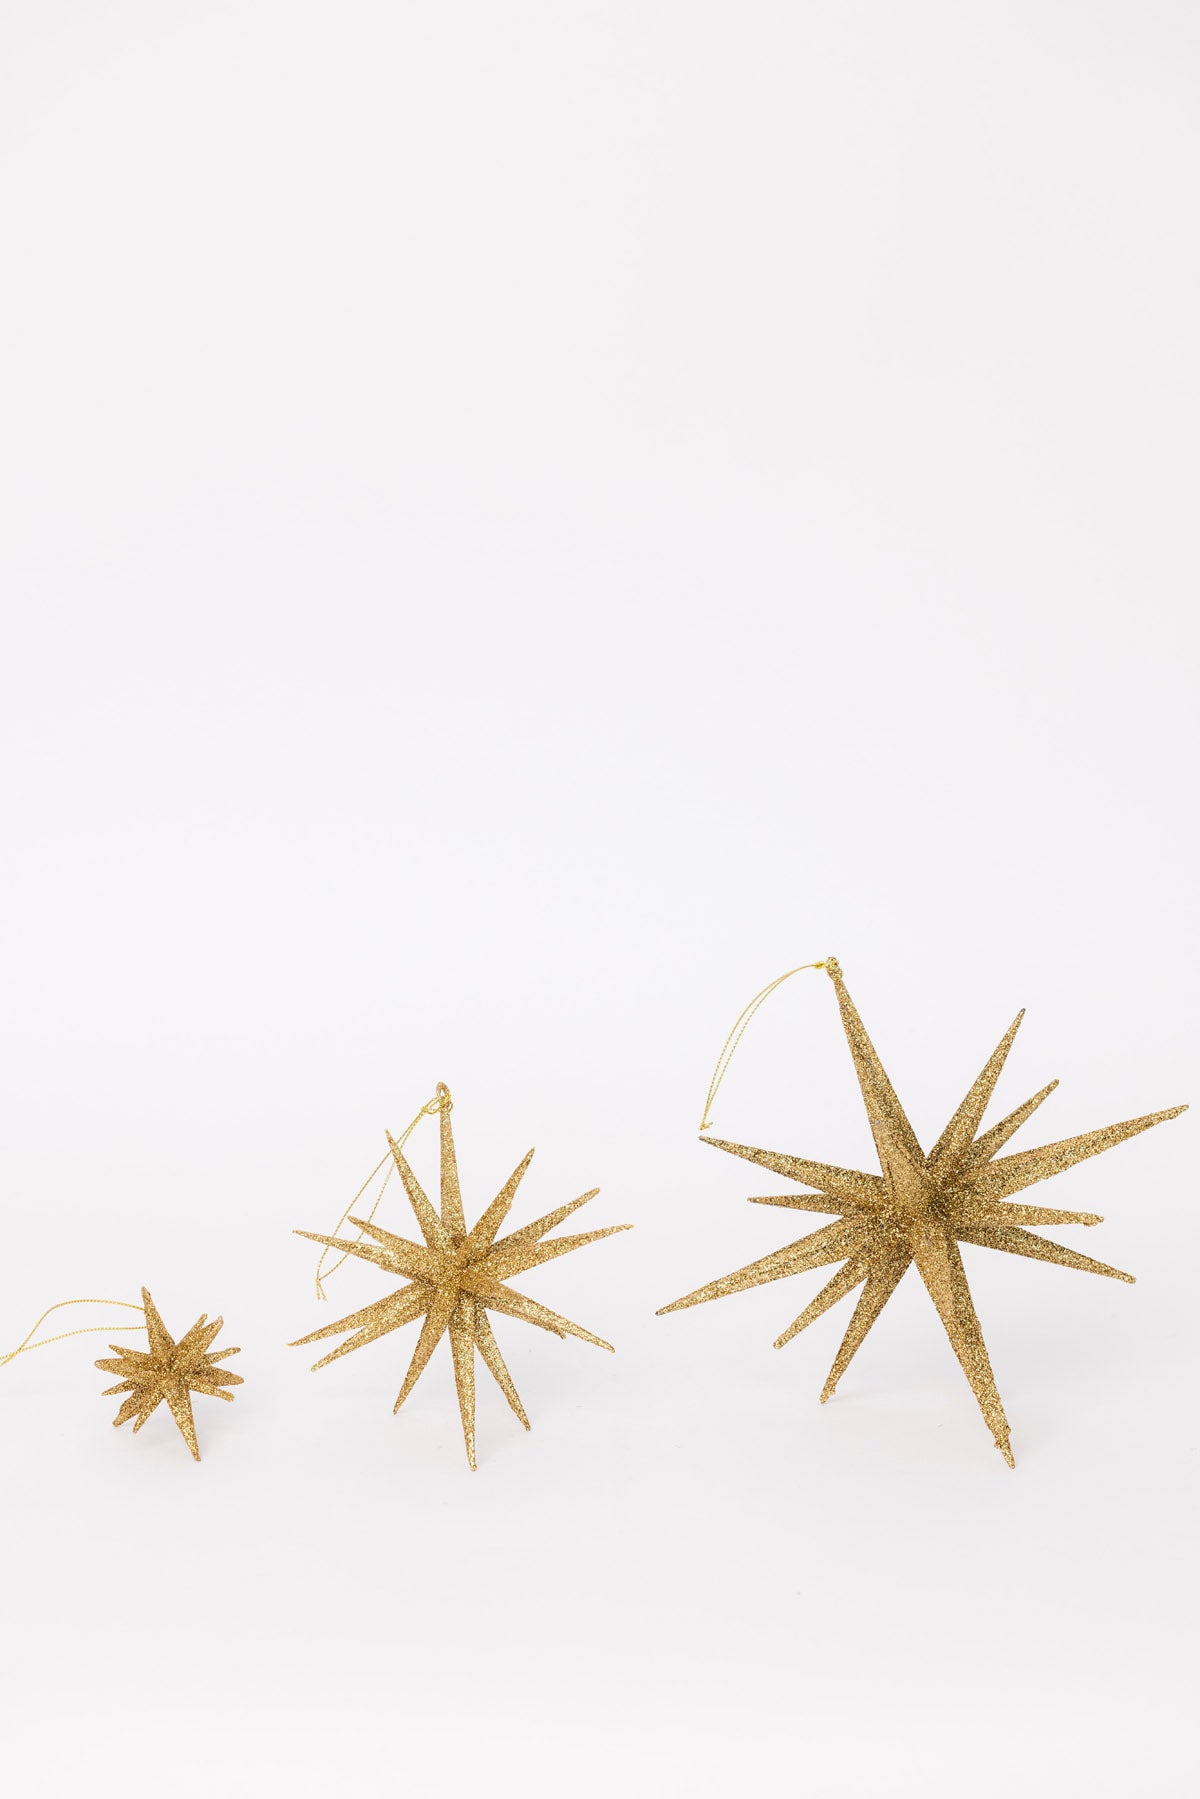 Celebration Starburst - Gold - 3 Sizes